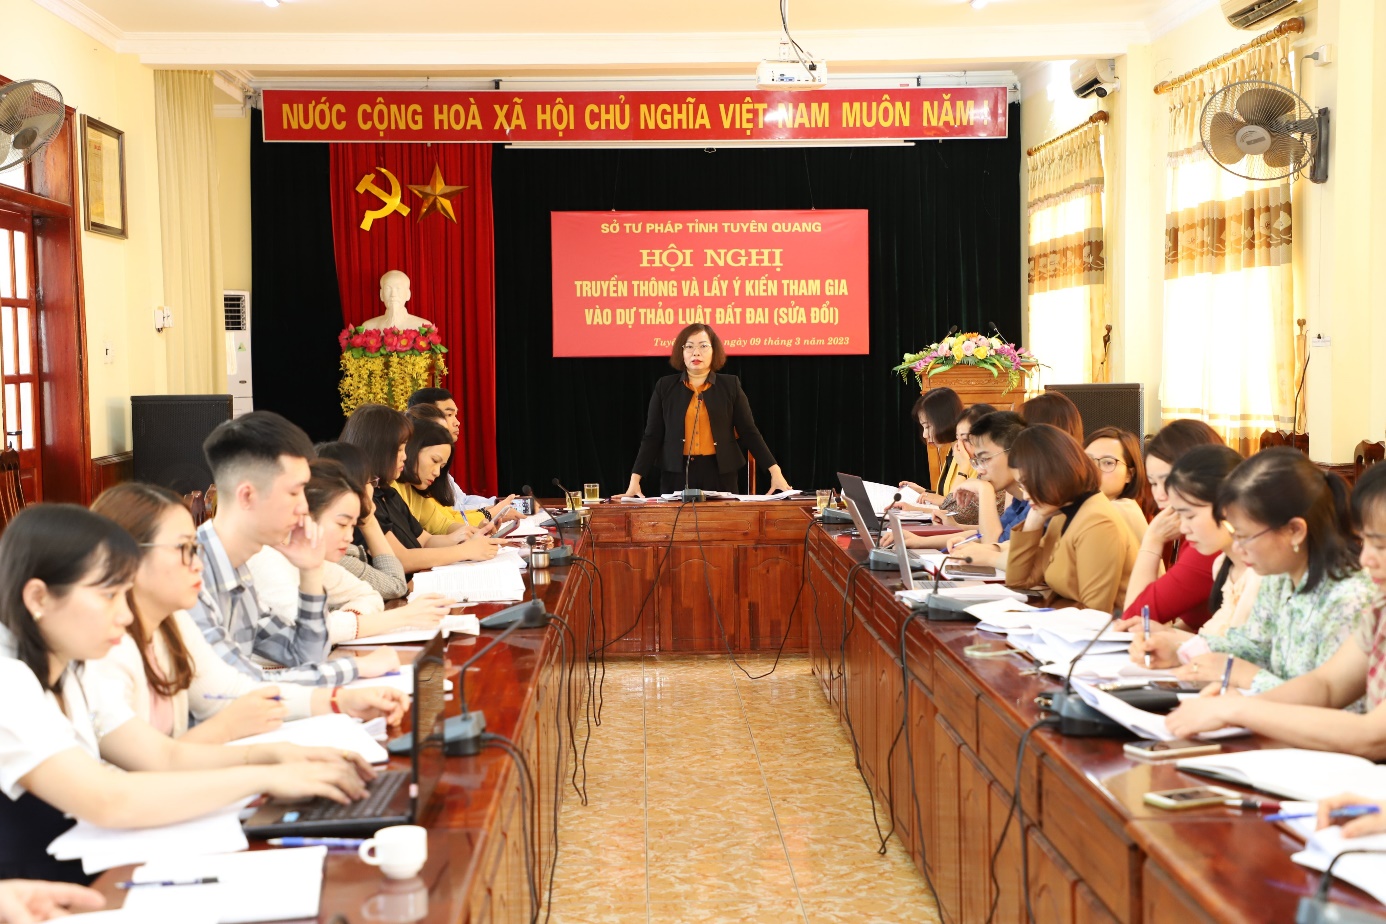 Sở Tư pháp tỉnh Tuyên Quang tổ chức Hội nghị truyền thông và lấy ý kiến của công chức, viên chức Sở Tư pháp đối với dự thảo Luật Đất đai (sửa đổi).